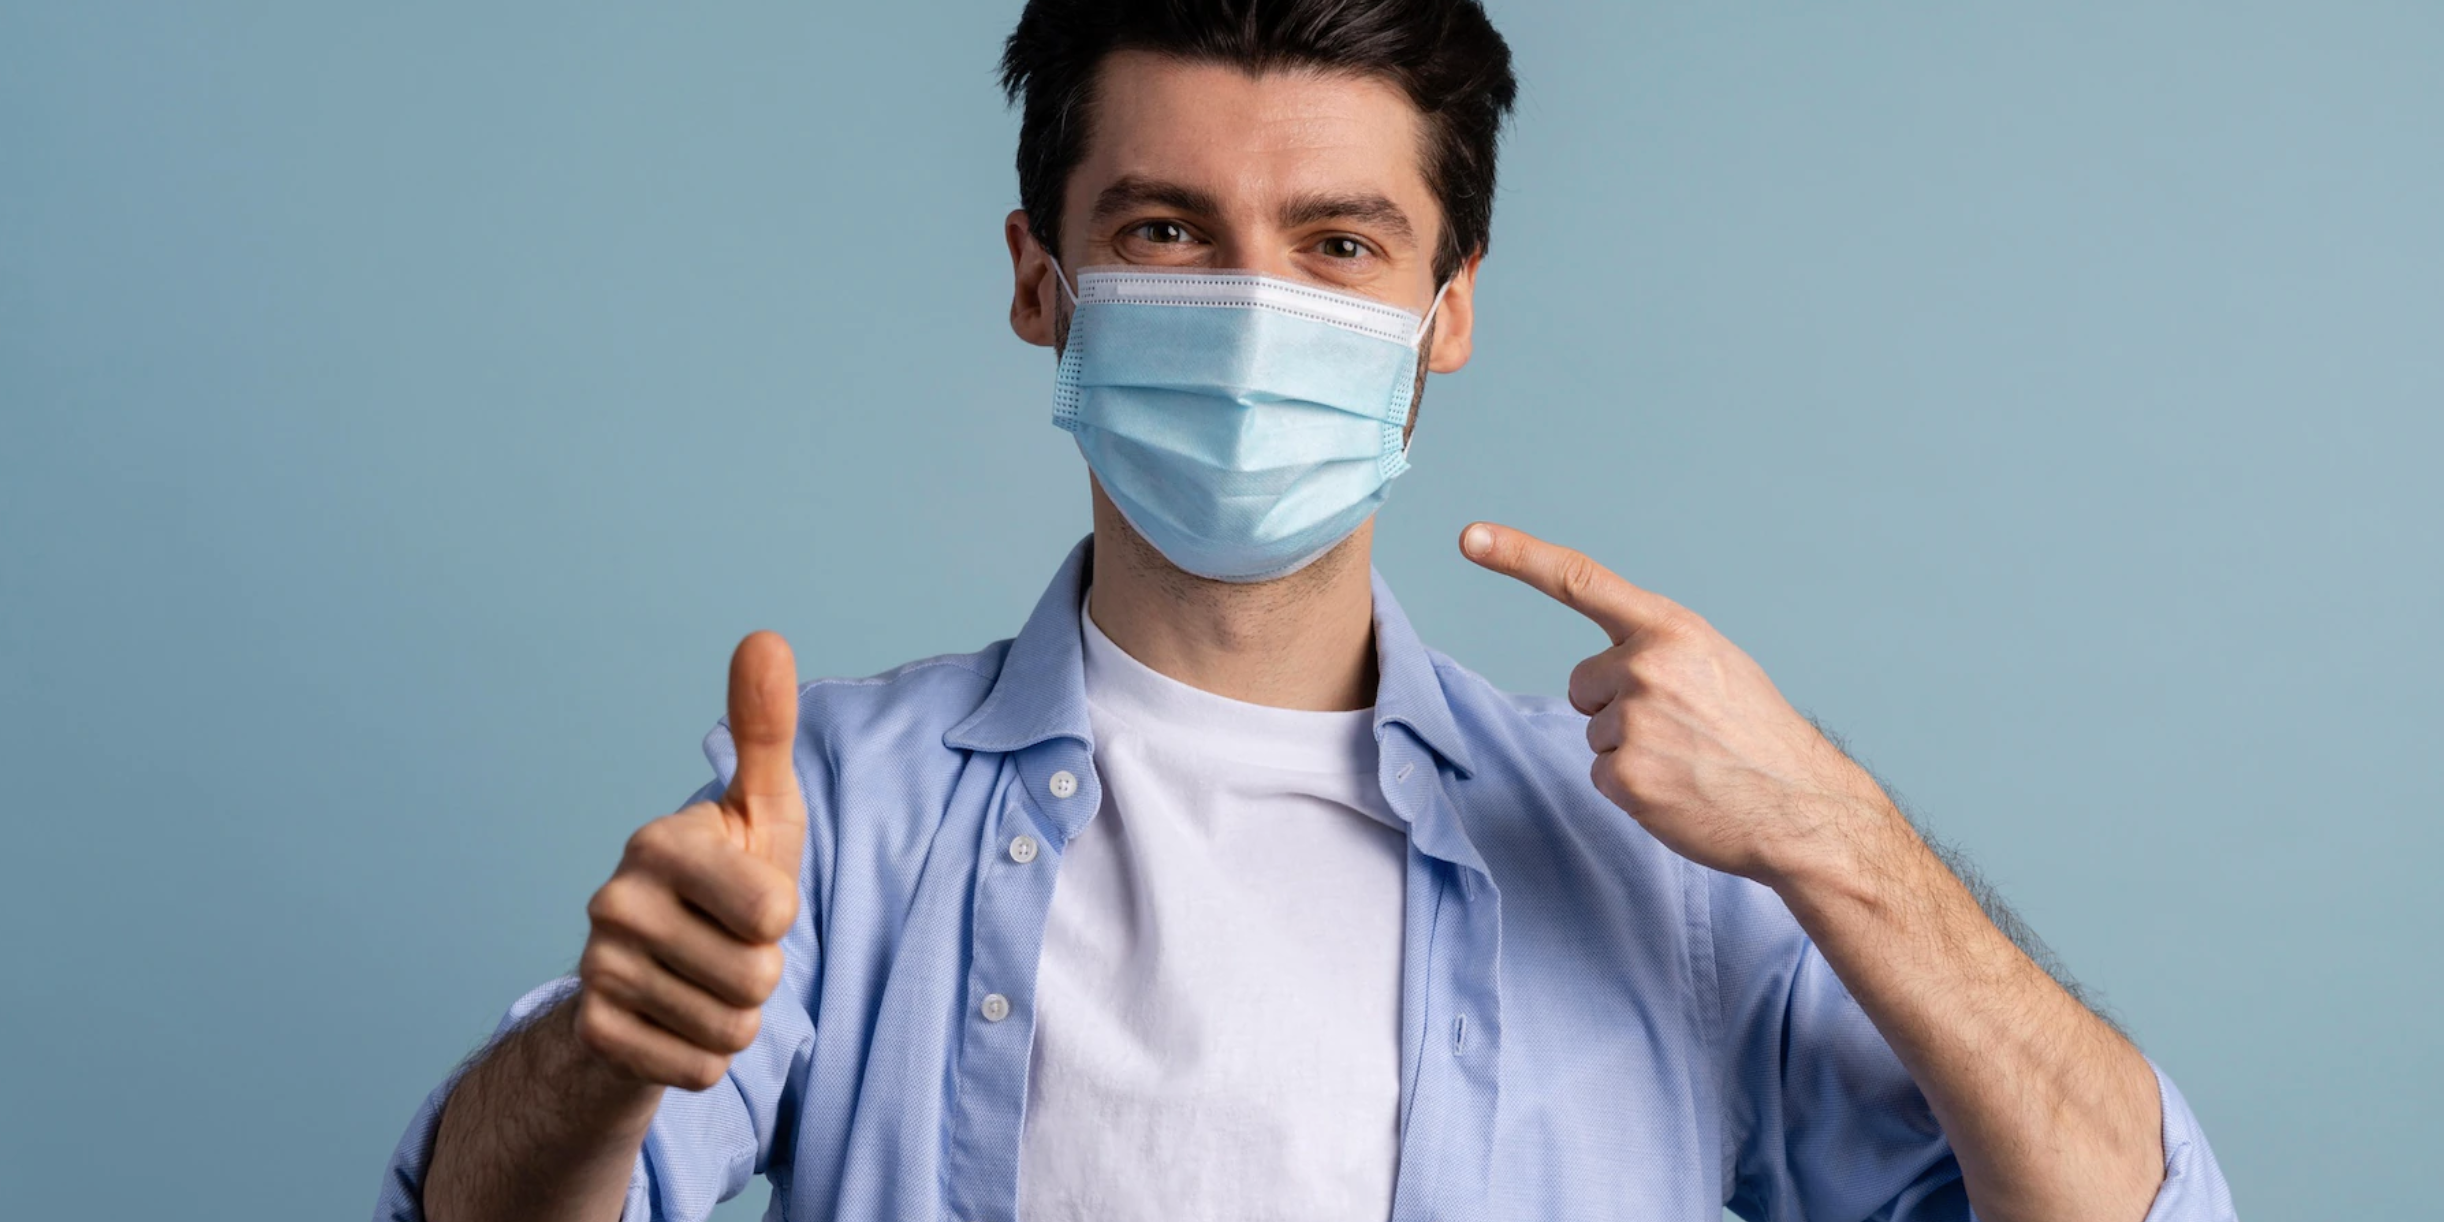 Hábitos de higiene oral en pandemia